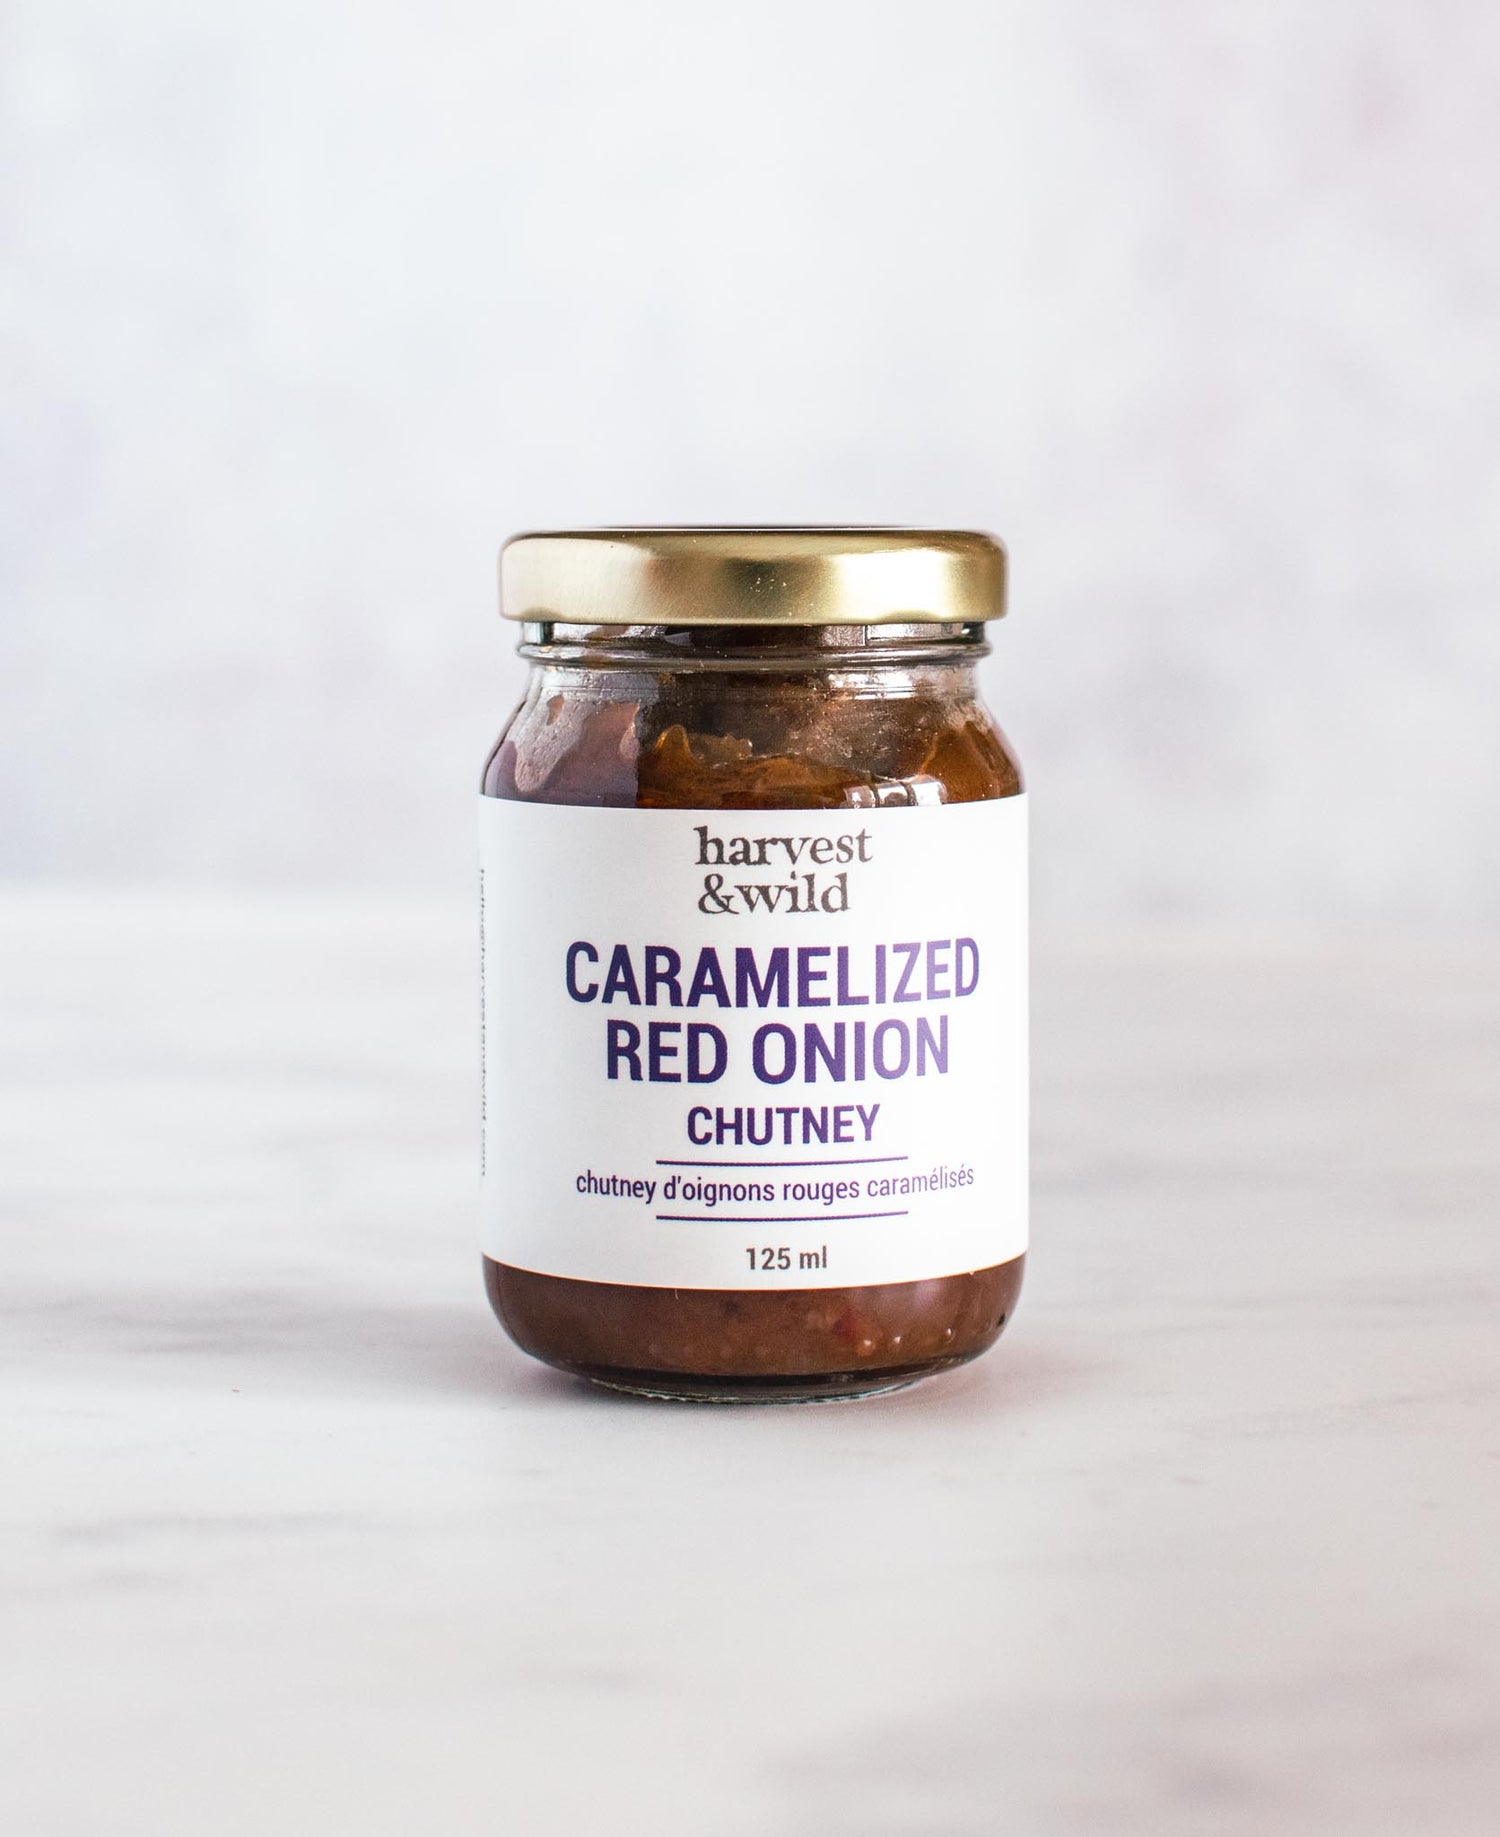 Caramelized Red Onion Chutney in 125ml glass jar